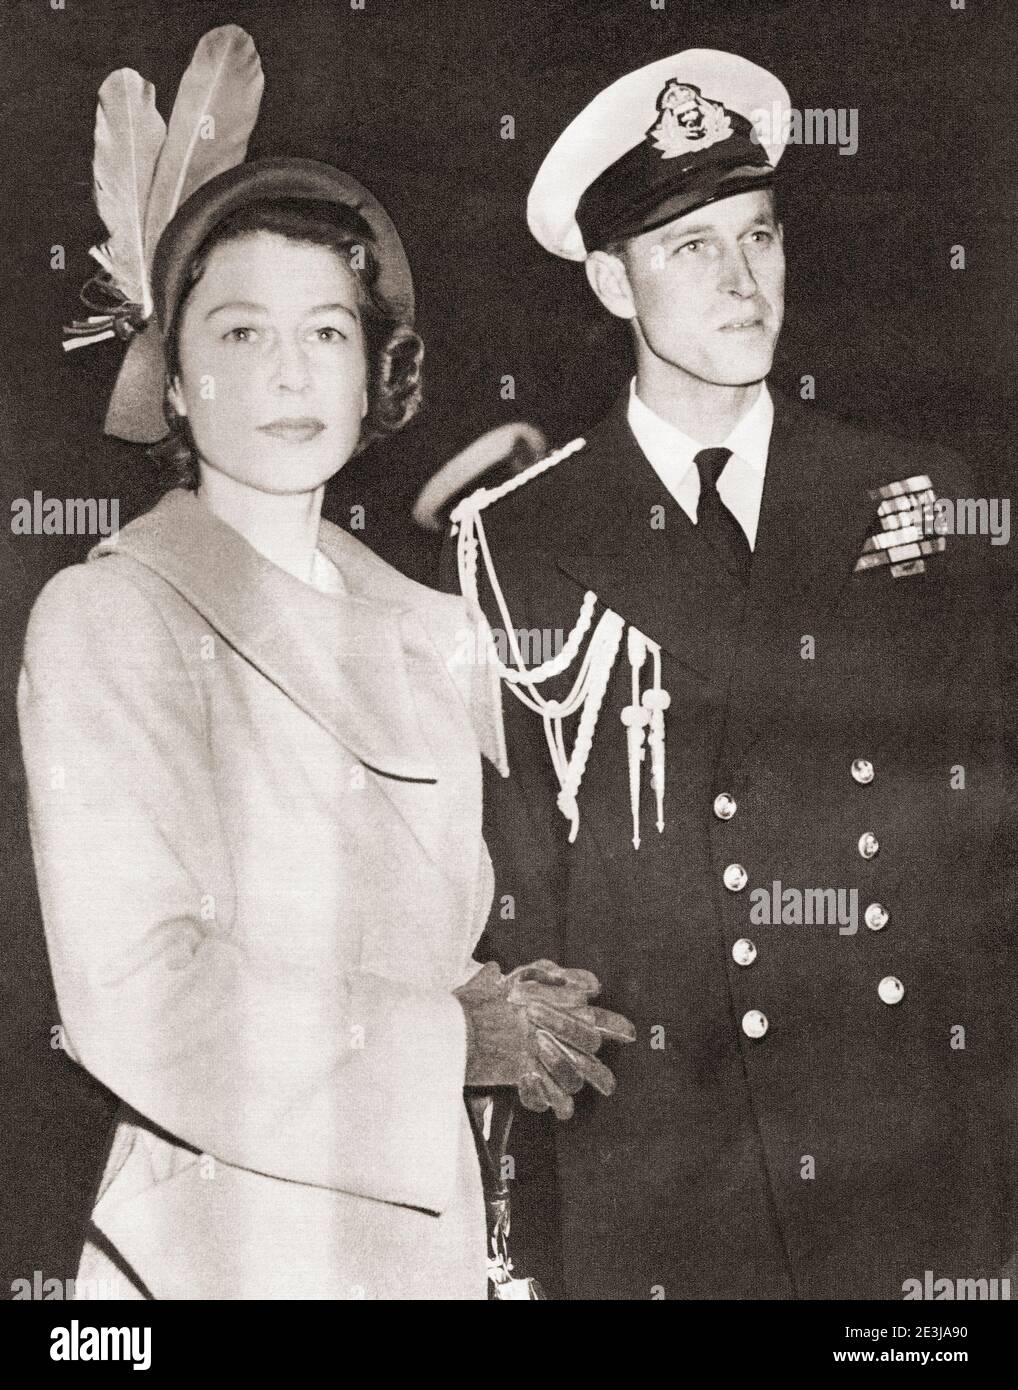 EDITORIAL NUR Prinzessin Elizabeth gesehen hier mit dem Herzog von Edinburgh in Malta im Jahr 1949. Prinzessin Elisabeth von York, 1926 - 2022, zukünftige Elisabeth II., Königin des Vereinigten Königreichs. Prinz Philip, Herzog von Edinburgh, geboren Prinz Philip von Griechenland und Dänemark,1921-2021. Ehemann von Königin Elisabeth II. Aus dem Vereinigten Königreich. Aus dem Königin-Elisabeth-Krönungsbuch, veröffentlicht 1953. Stockfoto